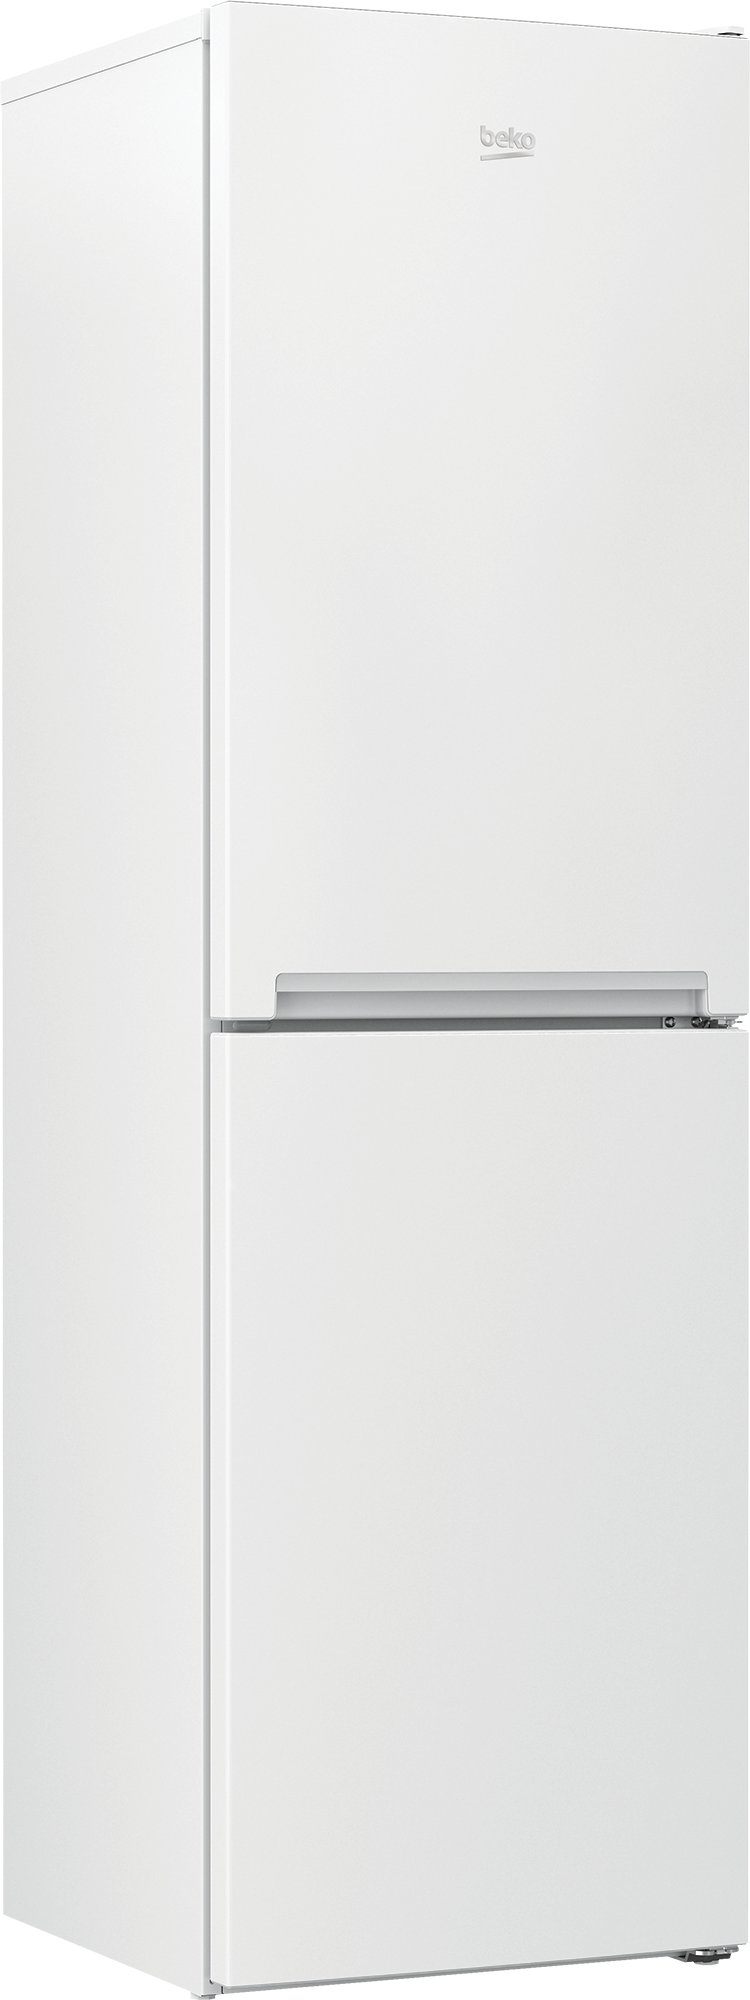 Beko CSG4582W Freestanding 50/50 Frost Free Fridge Freezer-White